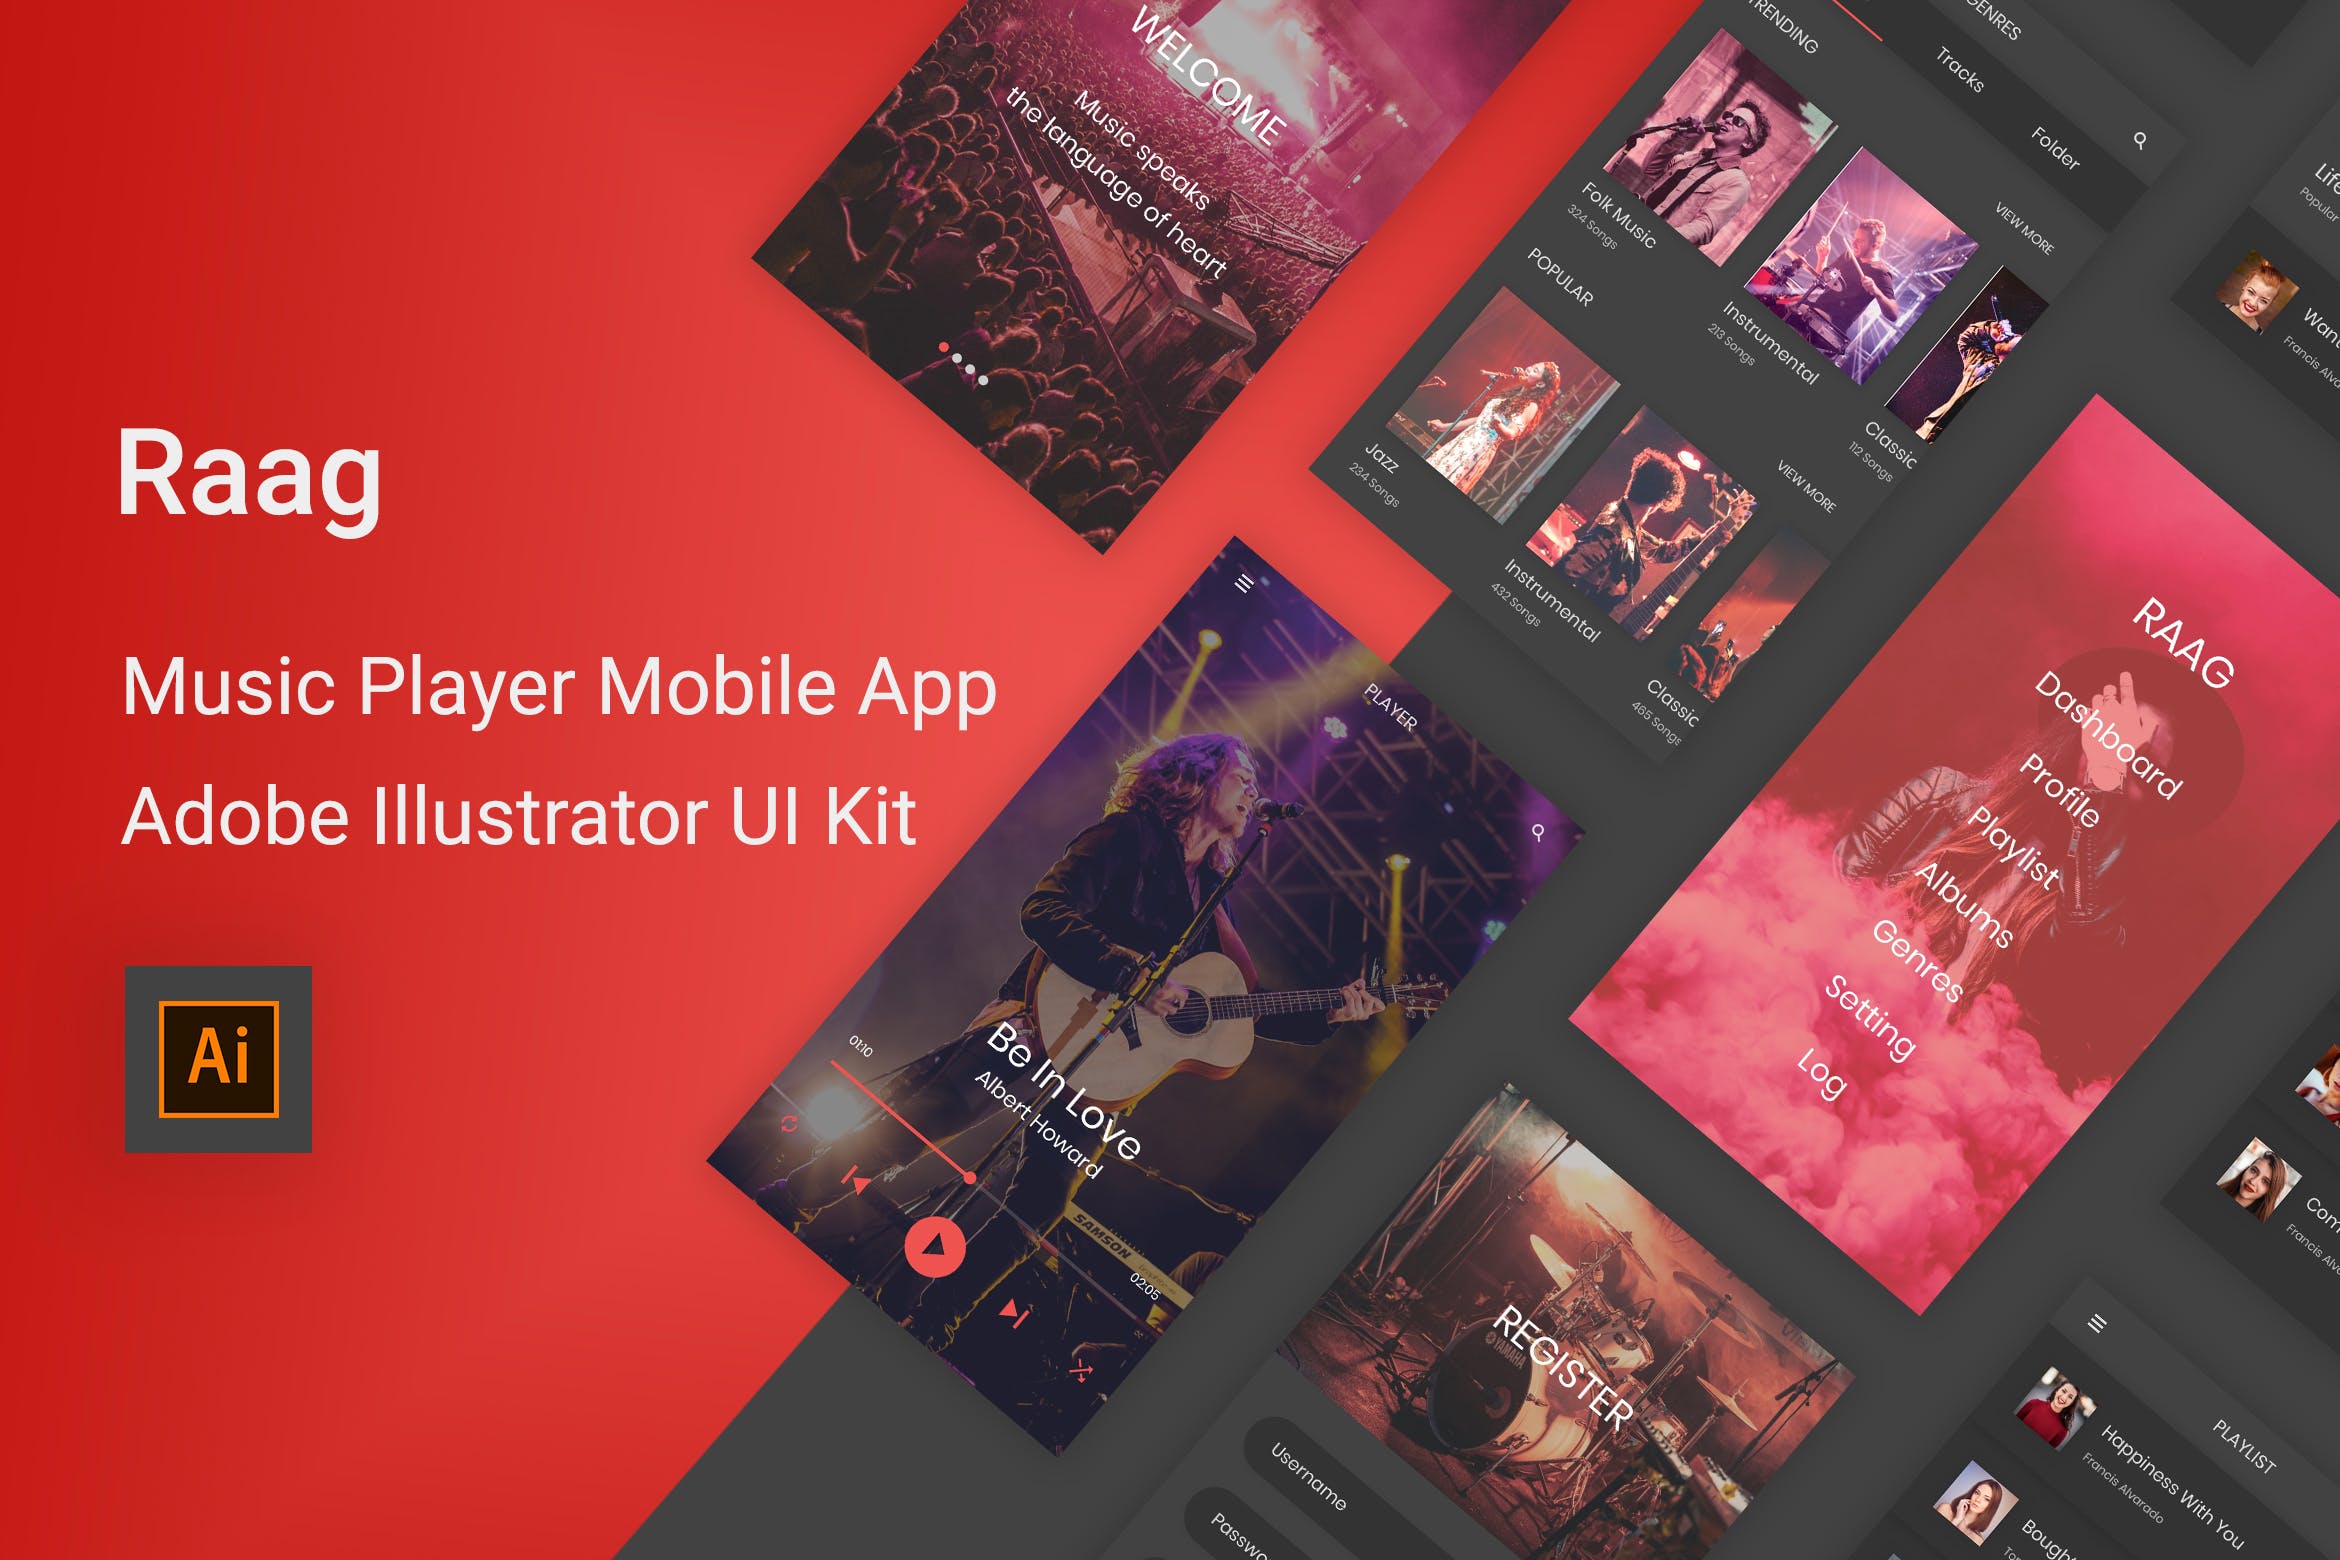 音乐听歌APP应用UI设计16图库精选套件 Raag – Music Player UI Kit for Adobe Illustrator插图